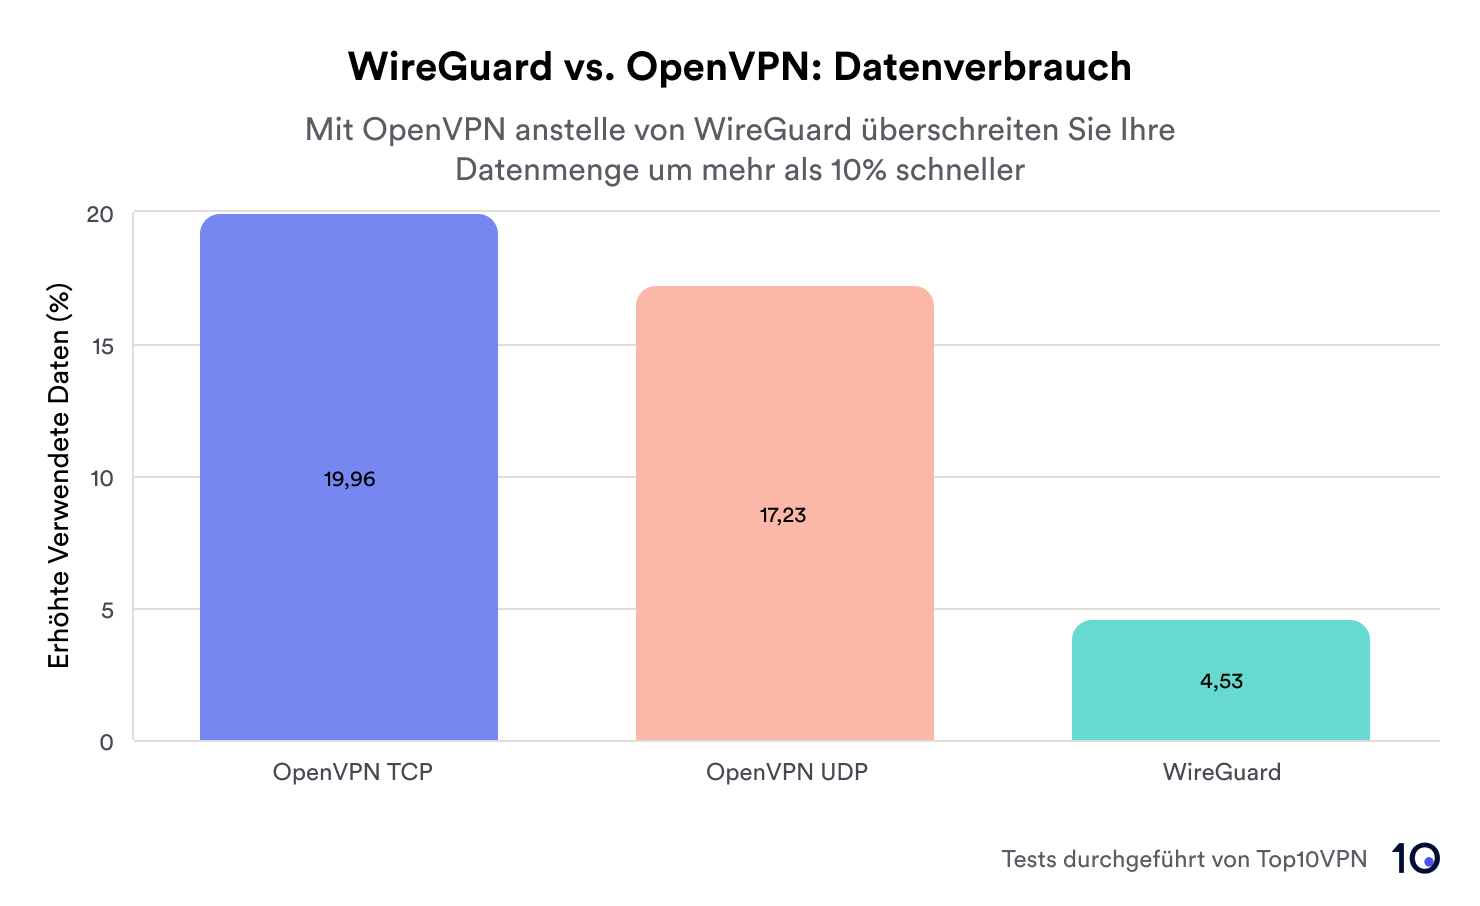 Balkendiagramm mit dem Datenverbrauch von OpenVPN TCP (+19,96%), OpenVPN UDP (+17,23%) und WireGuard (+4,53%)